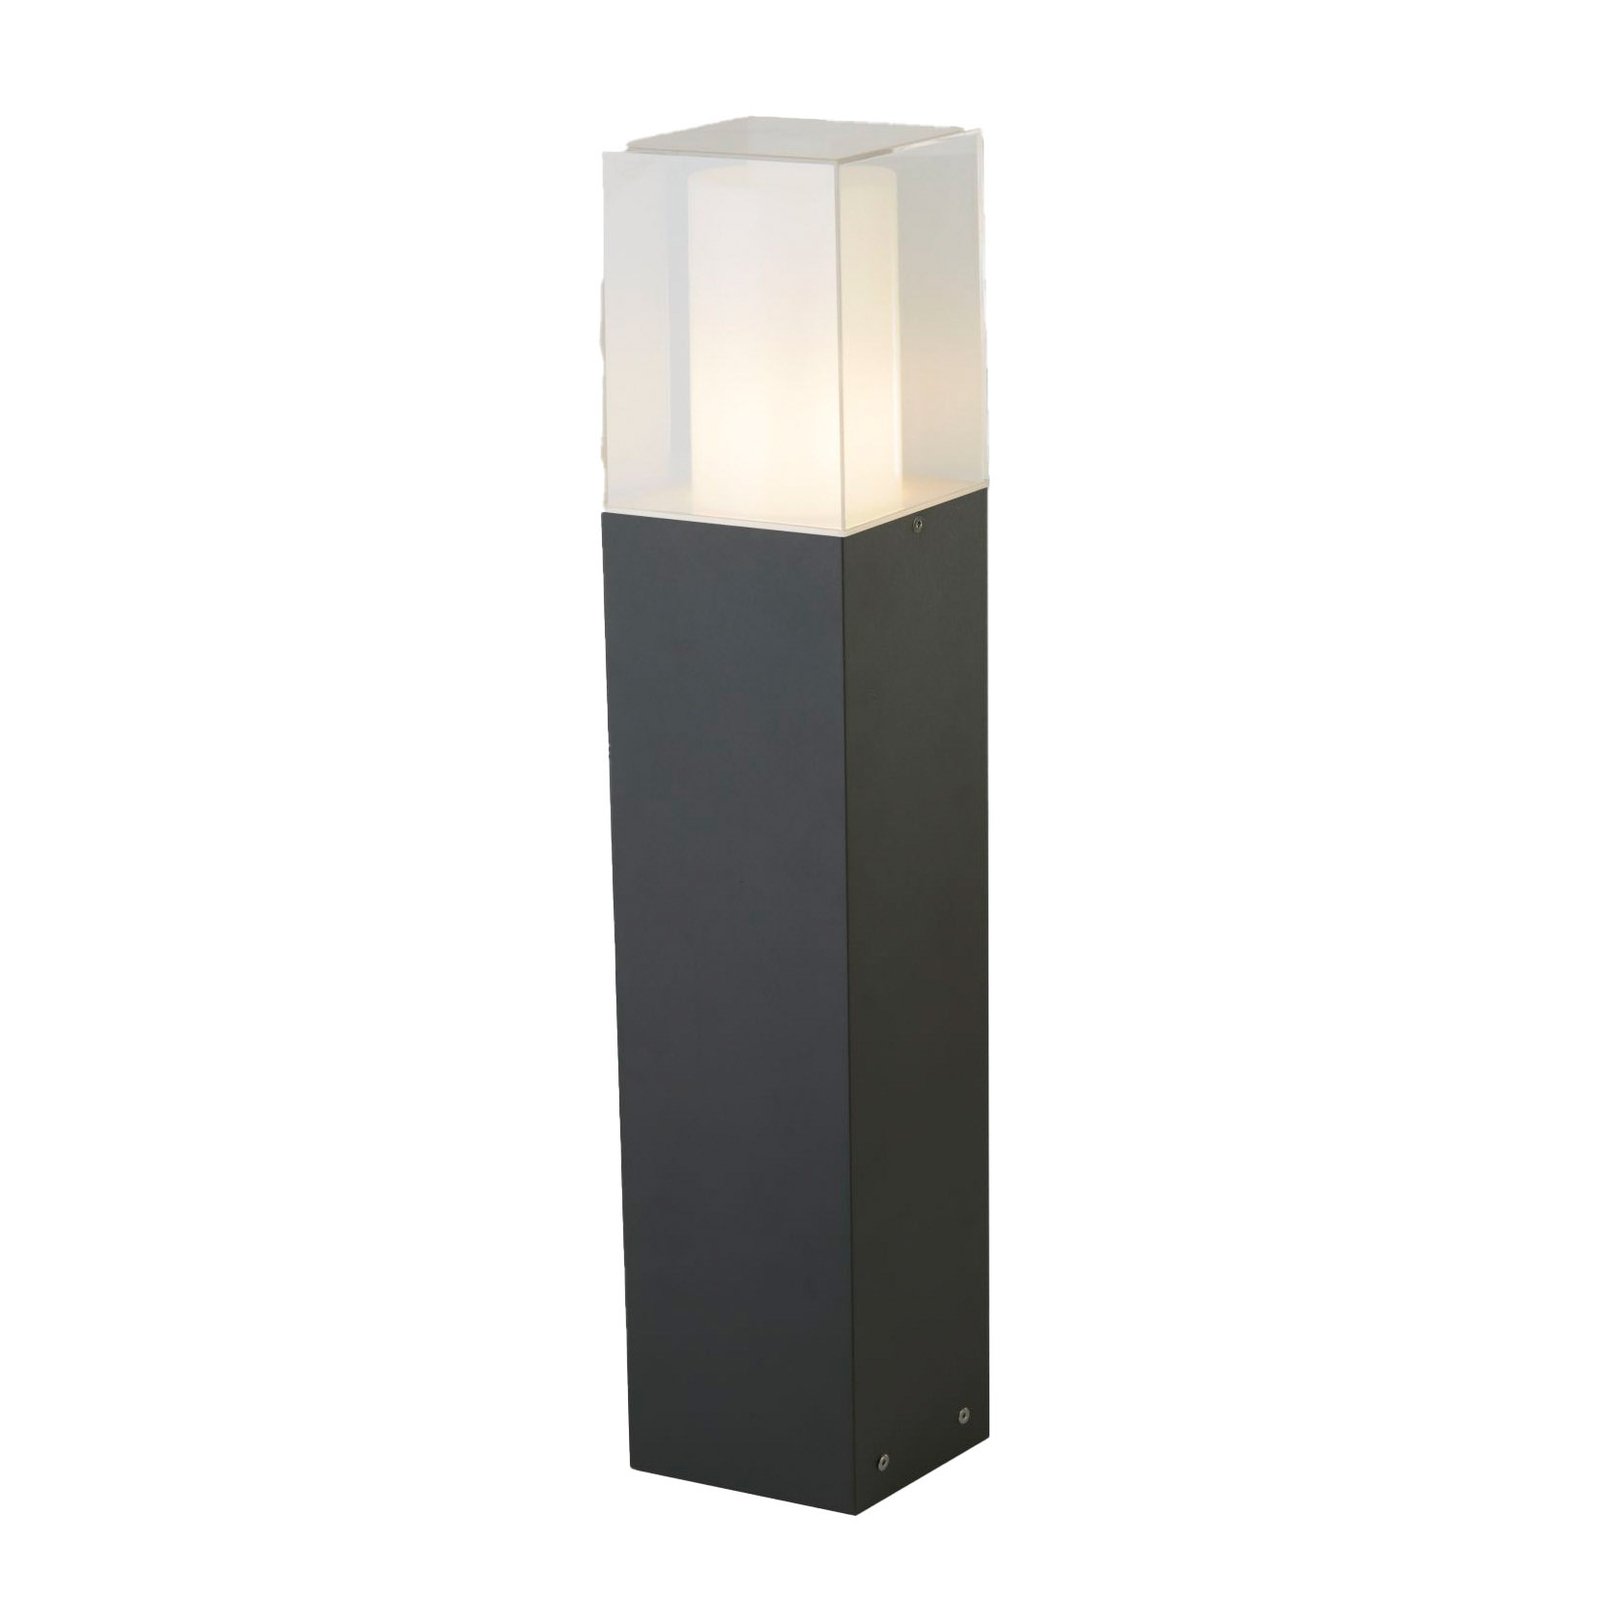 Granada pillar light in an angular shape